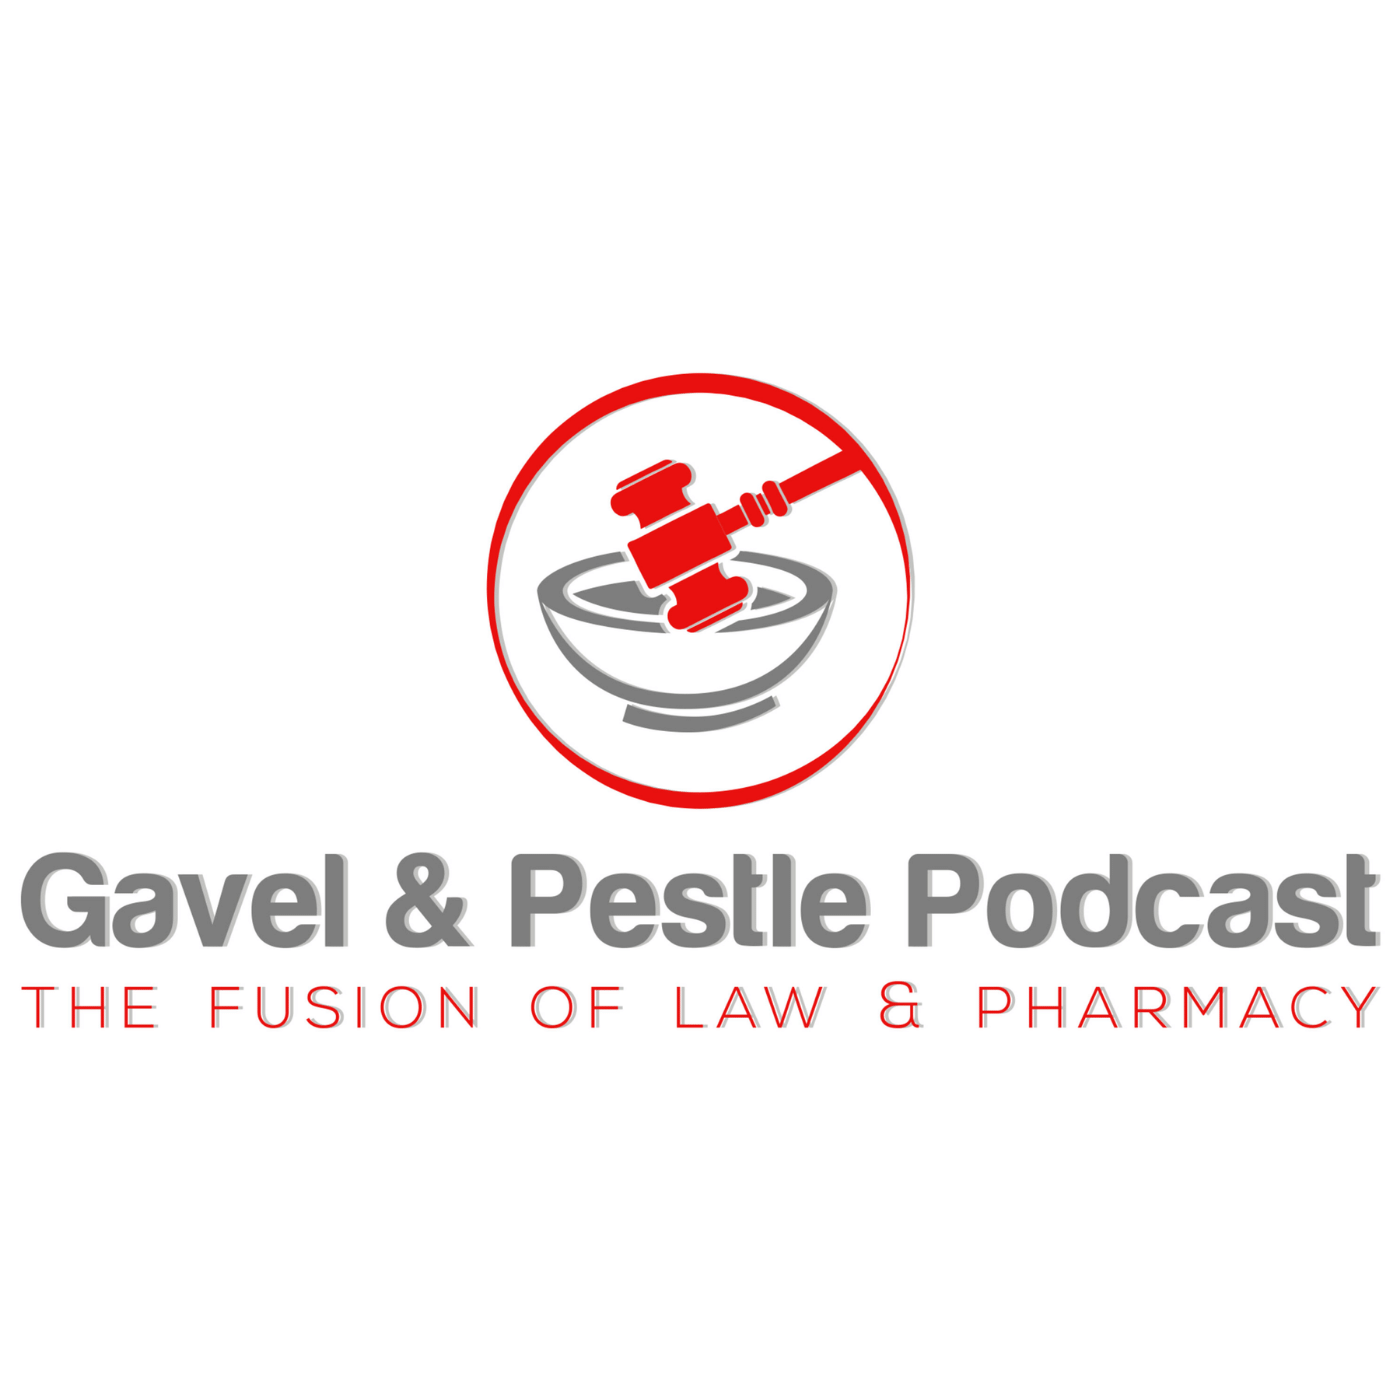 Gavel & Pestle Podcast